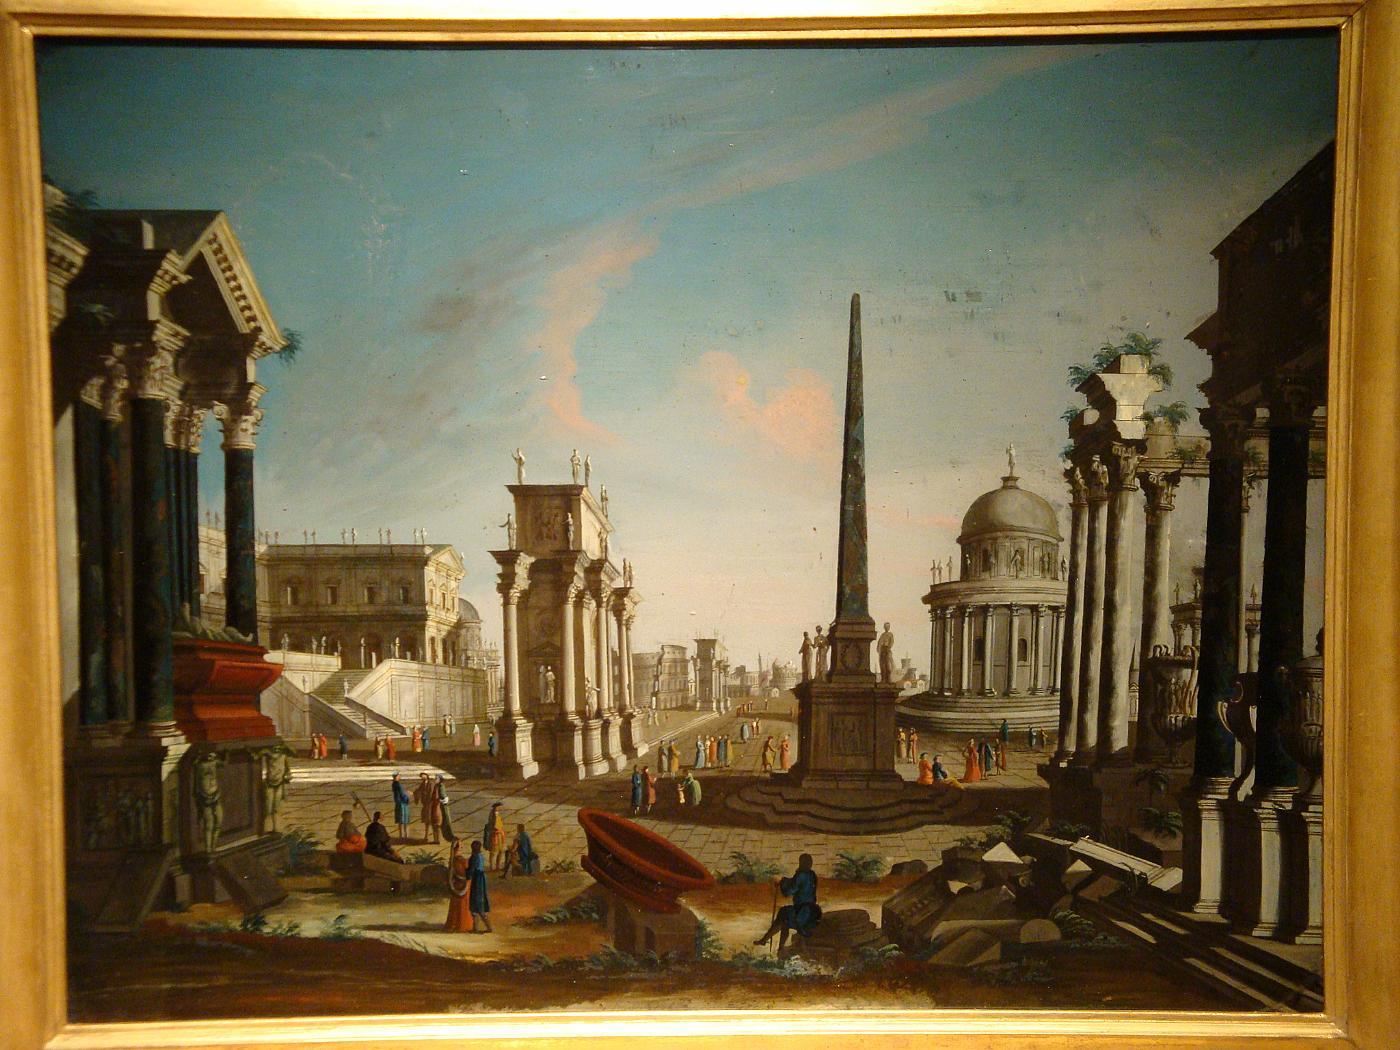 Francesco Chiarottini (1748-1796)
Römisches architektonisches Capriccio
Öl auf Glas, cm 52 x 67 ohne Rahmen, 63,5 x 79cm mit Rahmen

Das wertvolle Gemälde, das dem italienischen Maler Francesco Chiarottini zugeschrieben wird und aus Öl auf Glas